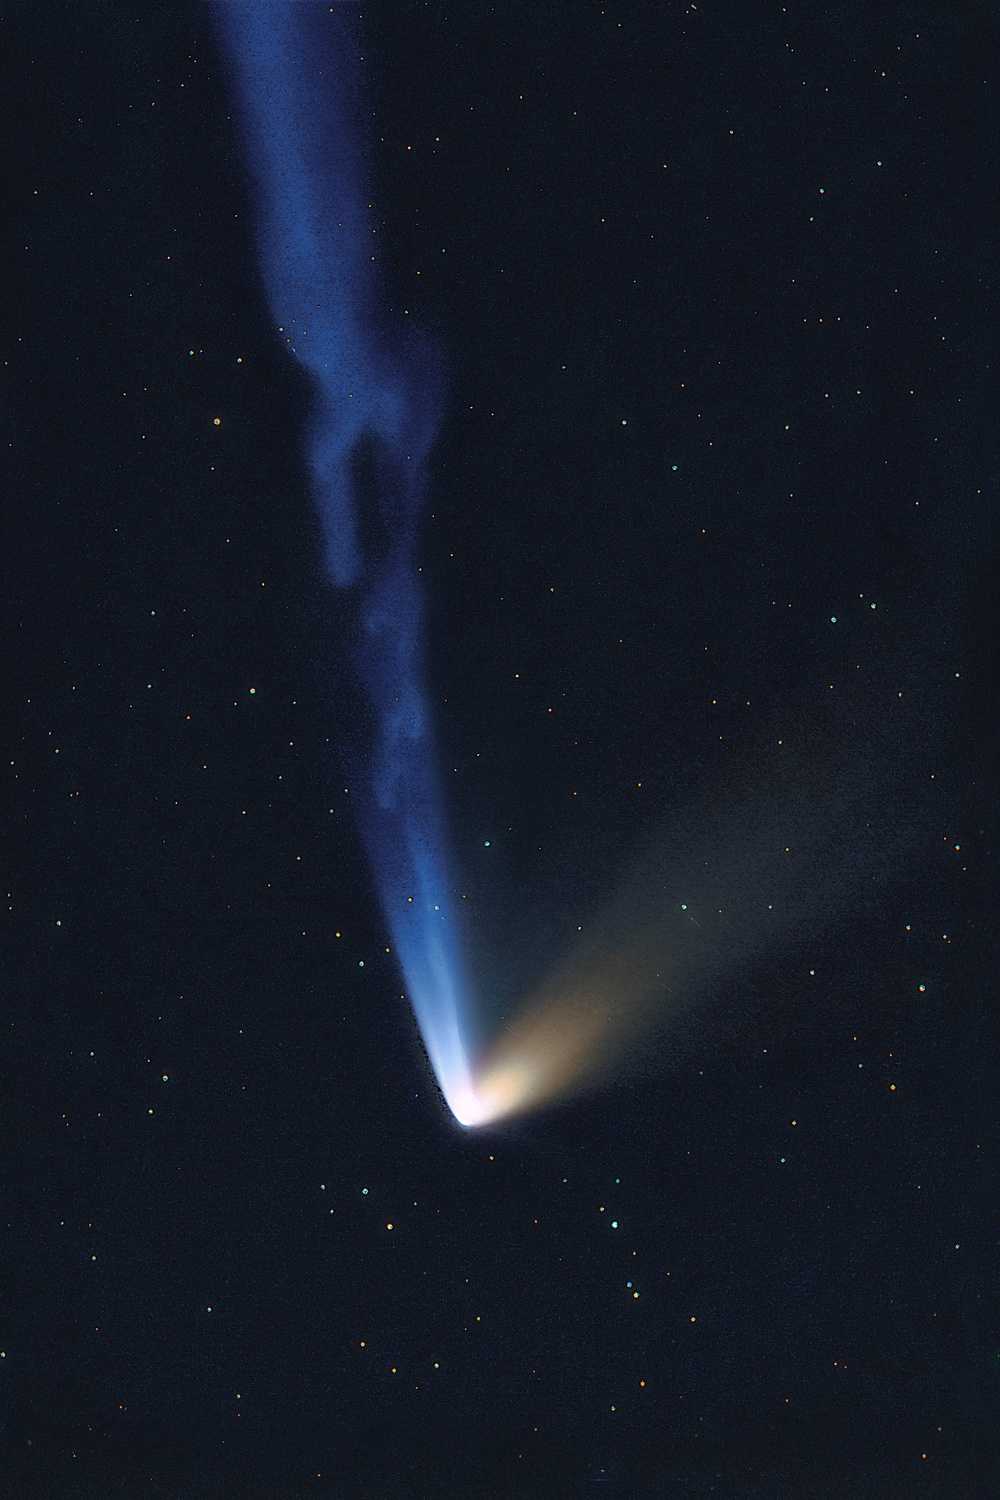 Comet C/2014 Q1 Pannstarrs